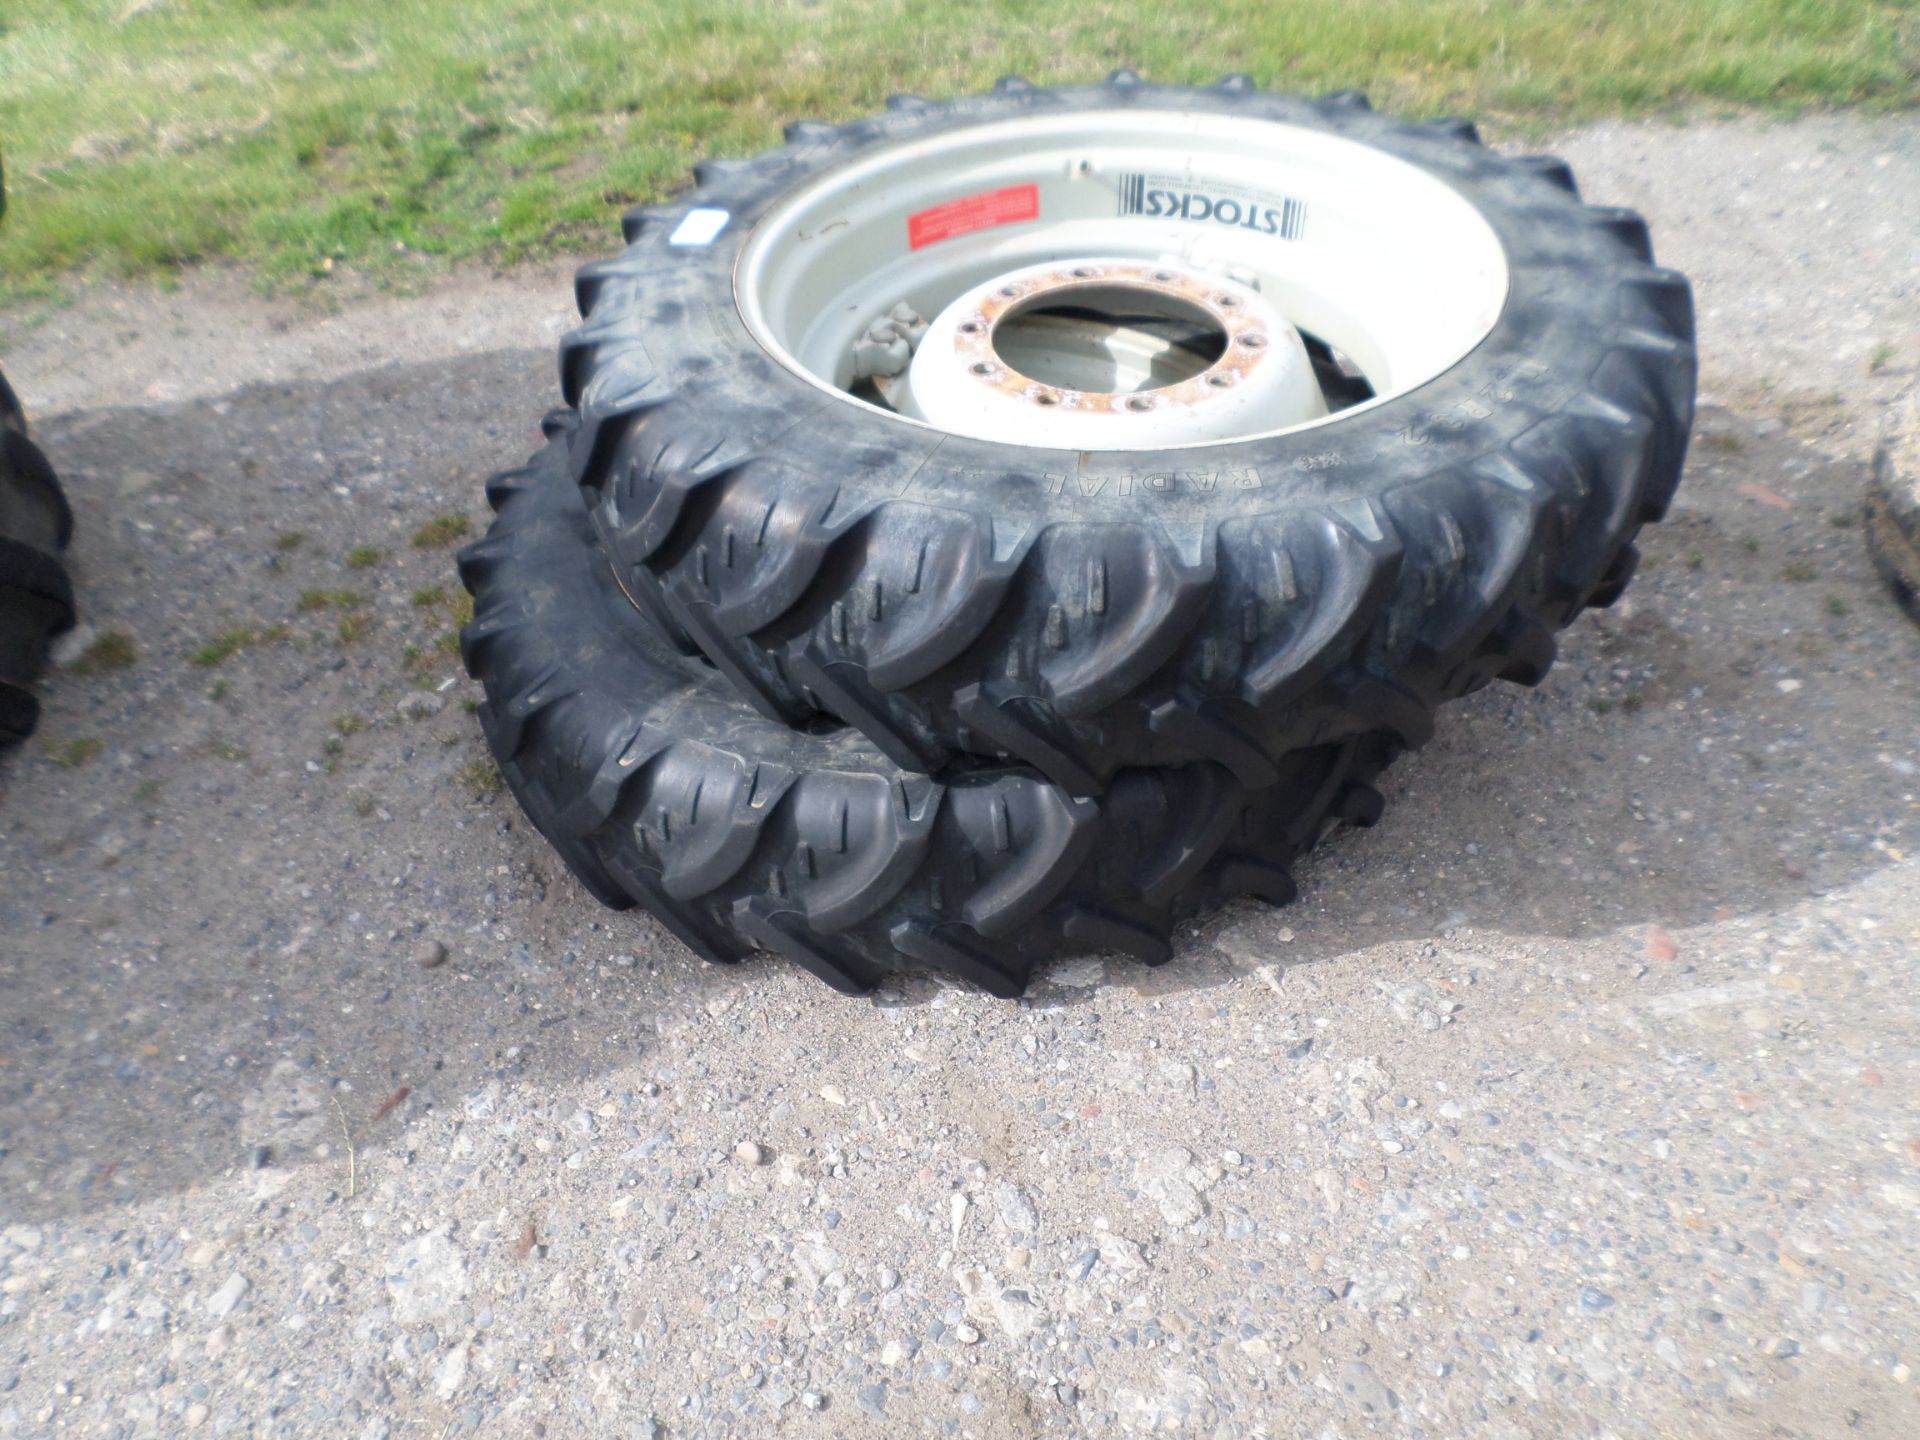 Pair of 11.2/32 row crop wheels, Kleber tyres 60% good - Image 2 of 2